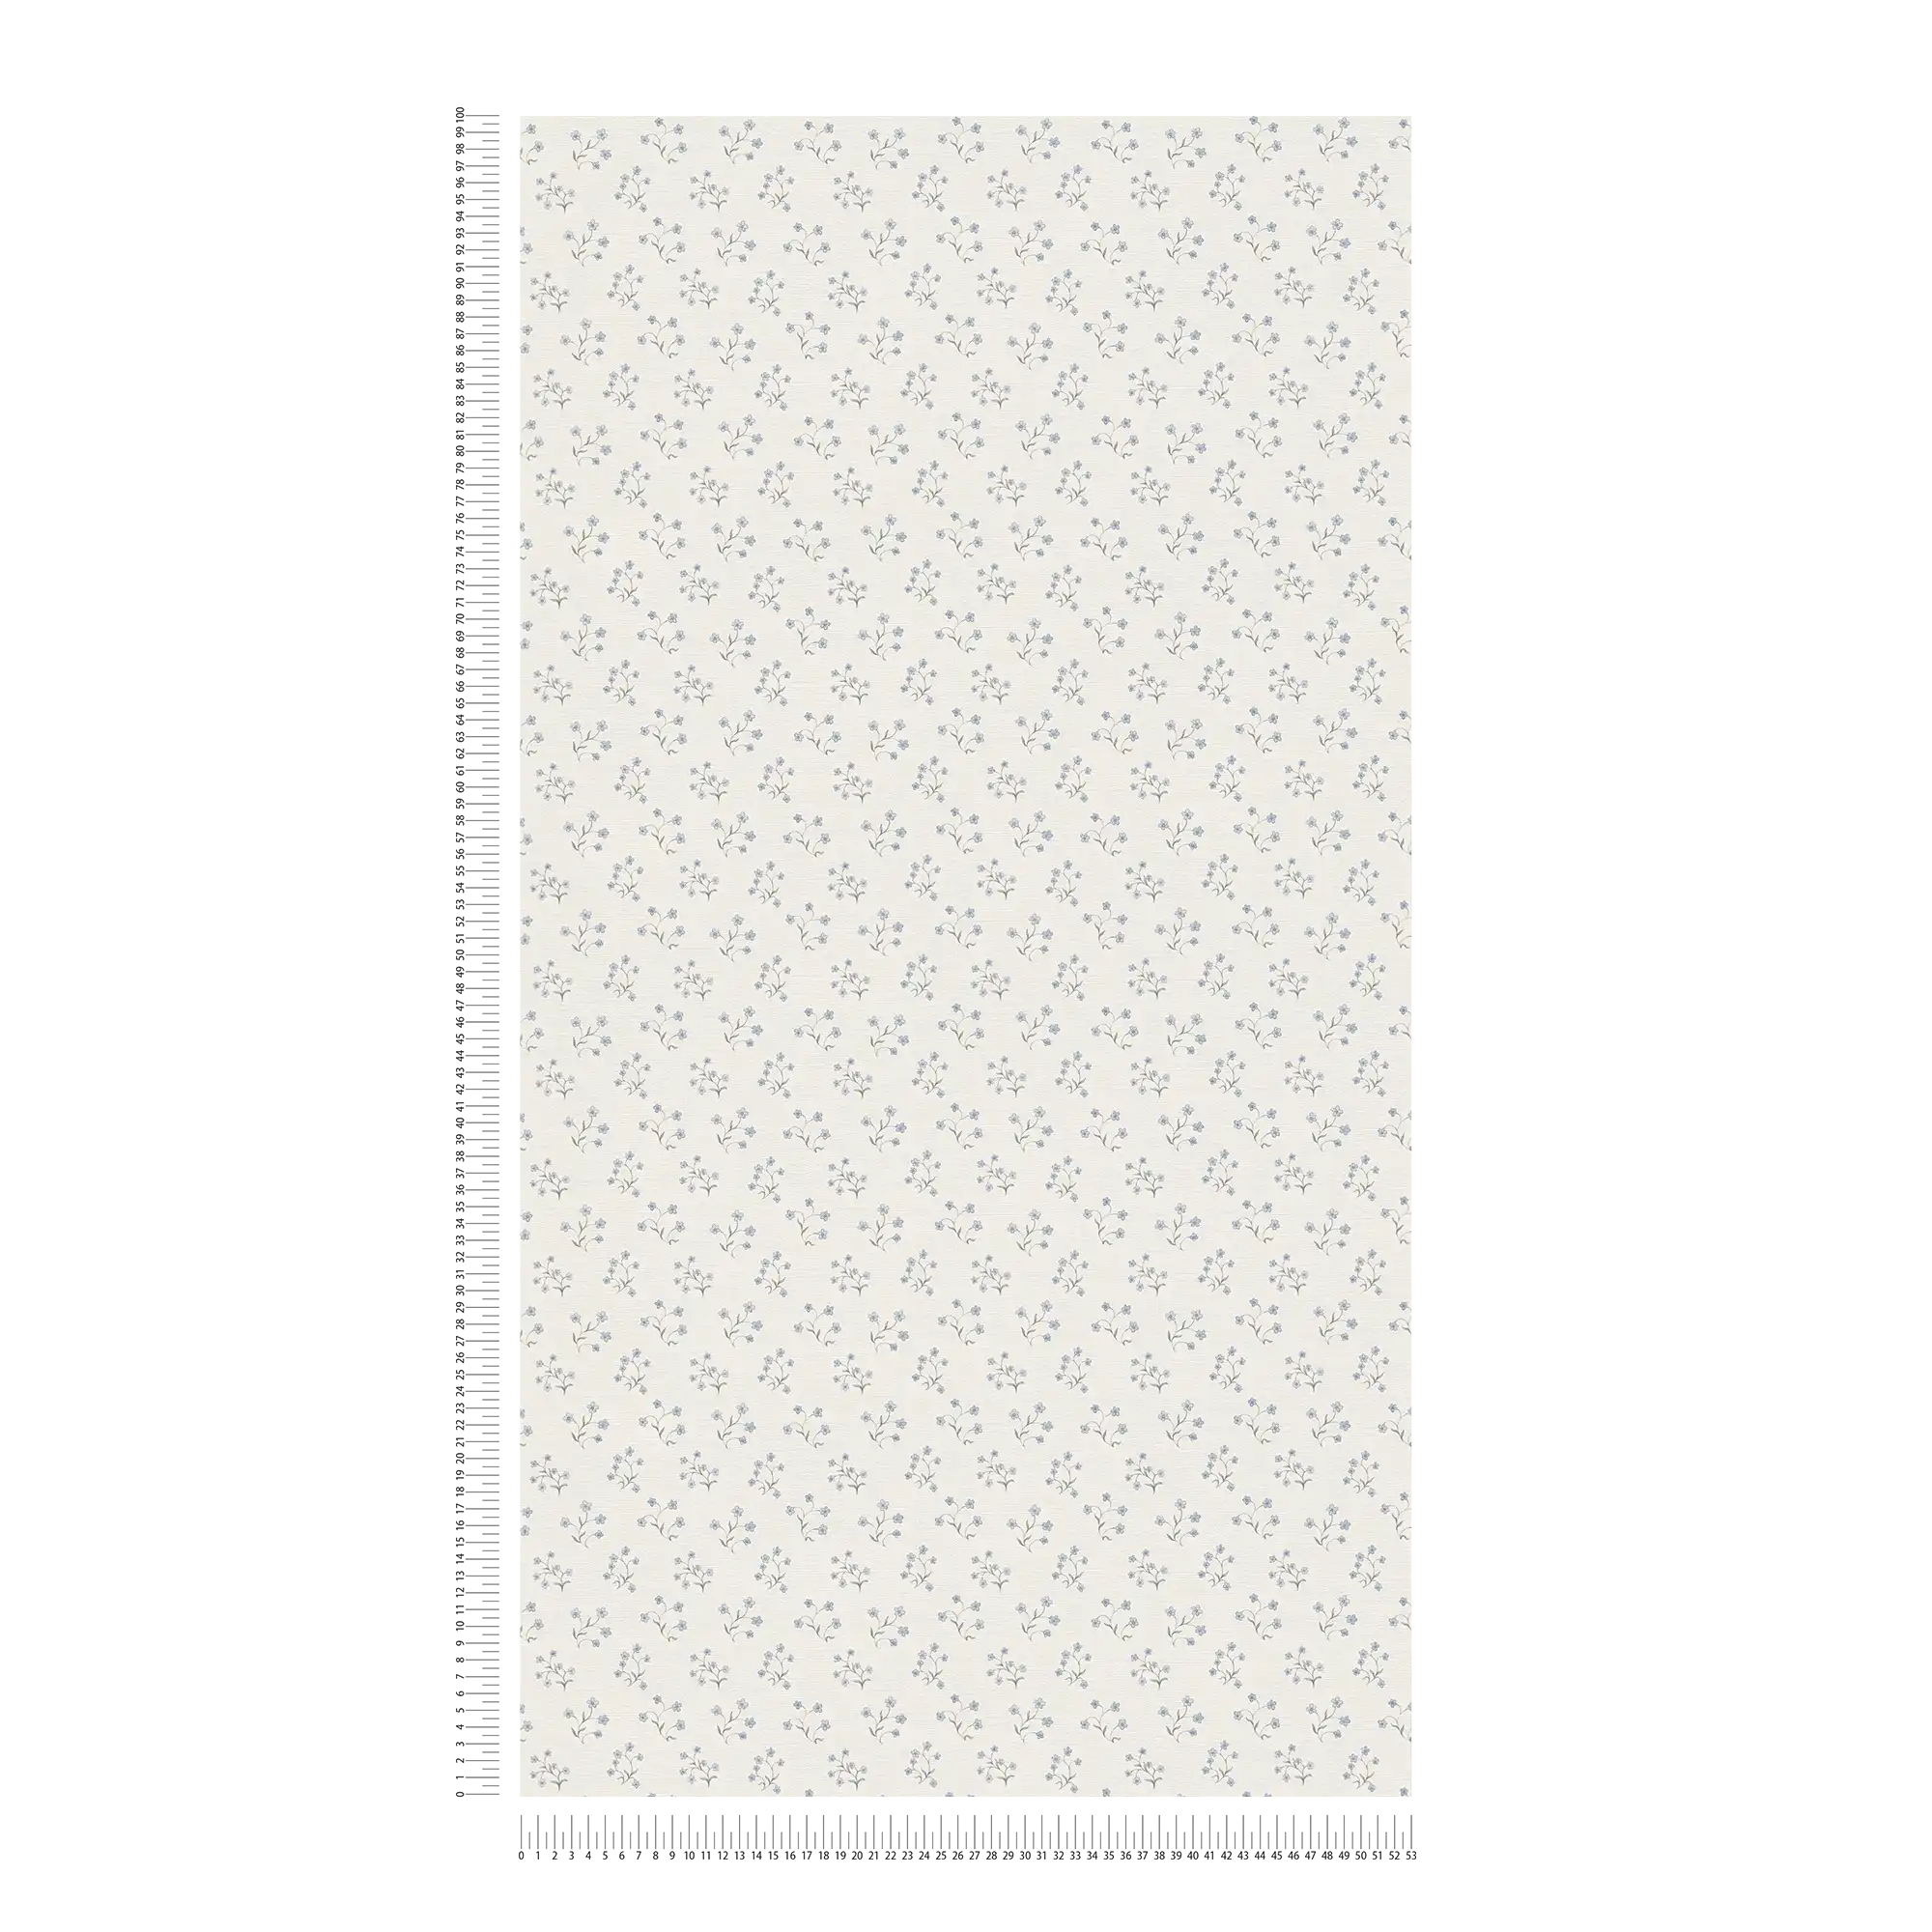             Carta da parati in tessuto non tessuto con raffinato motivo floreale - bianco, blu, grigio
        